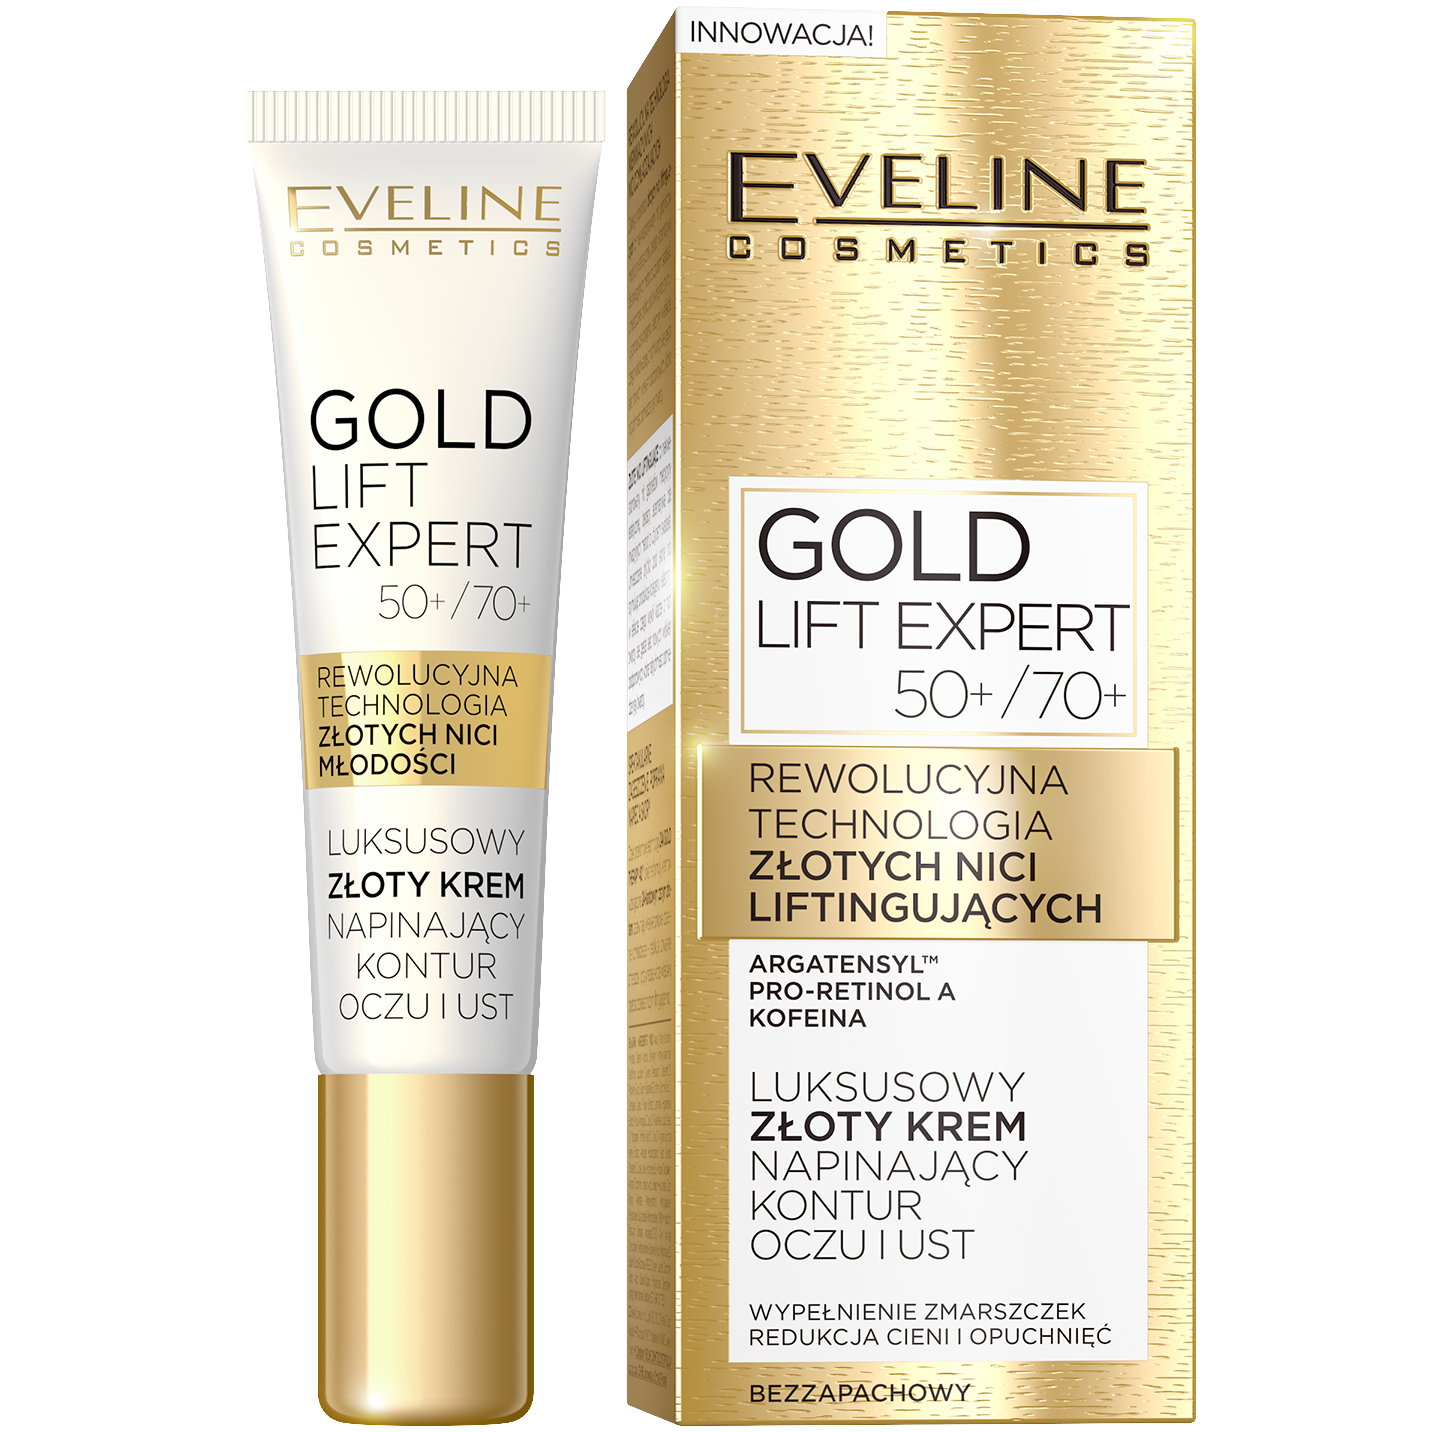 Eveline Cosmetics Gold Lift Expert крем для подтяжки контура глаз и губ 50+/70+, 15 мл eveline cosmetics золотой крем против морщин для контура глаз gold lift expert 15 мл 2 штуки